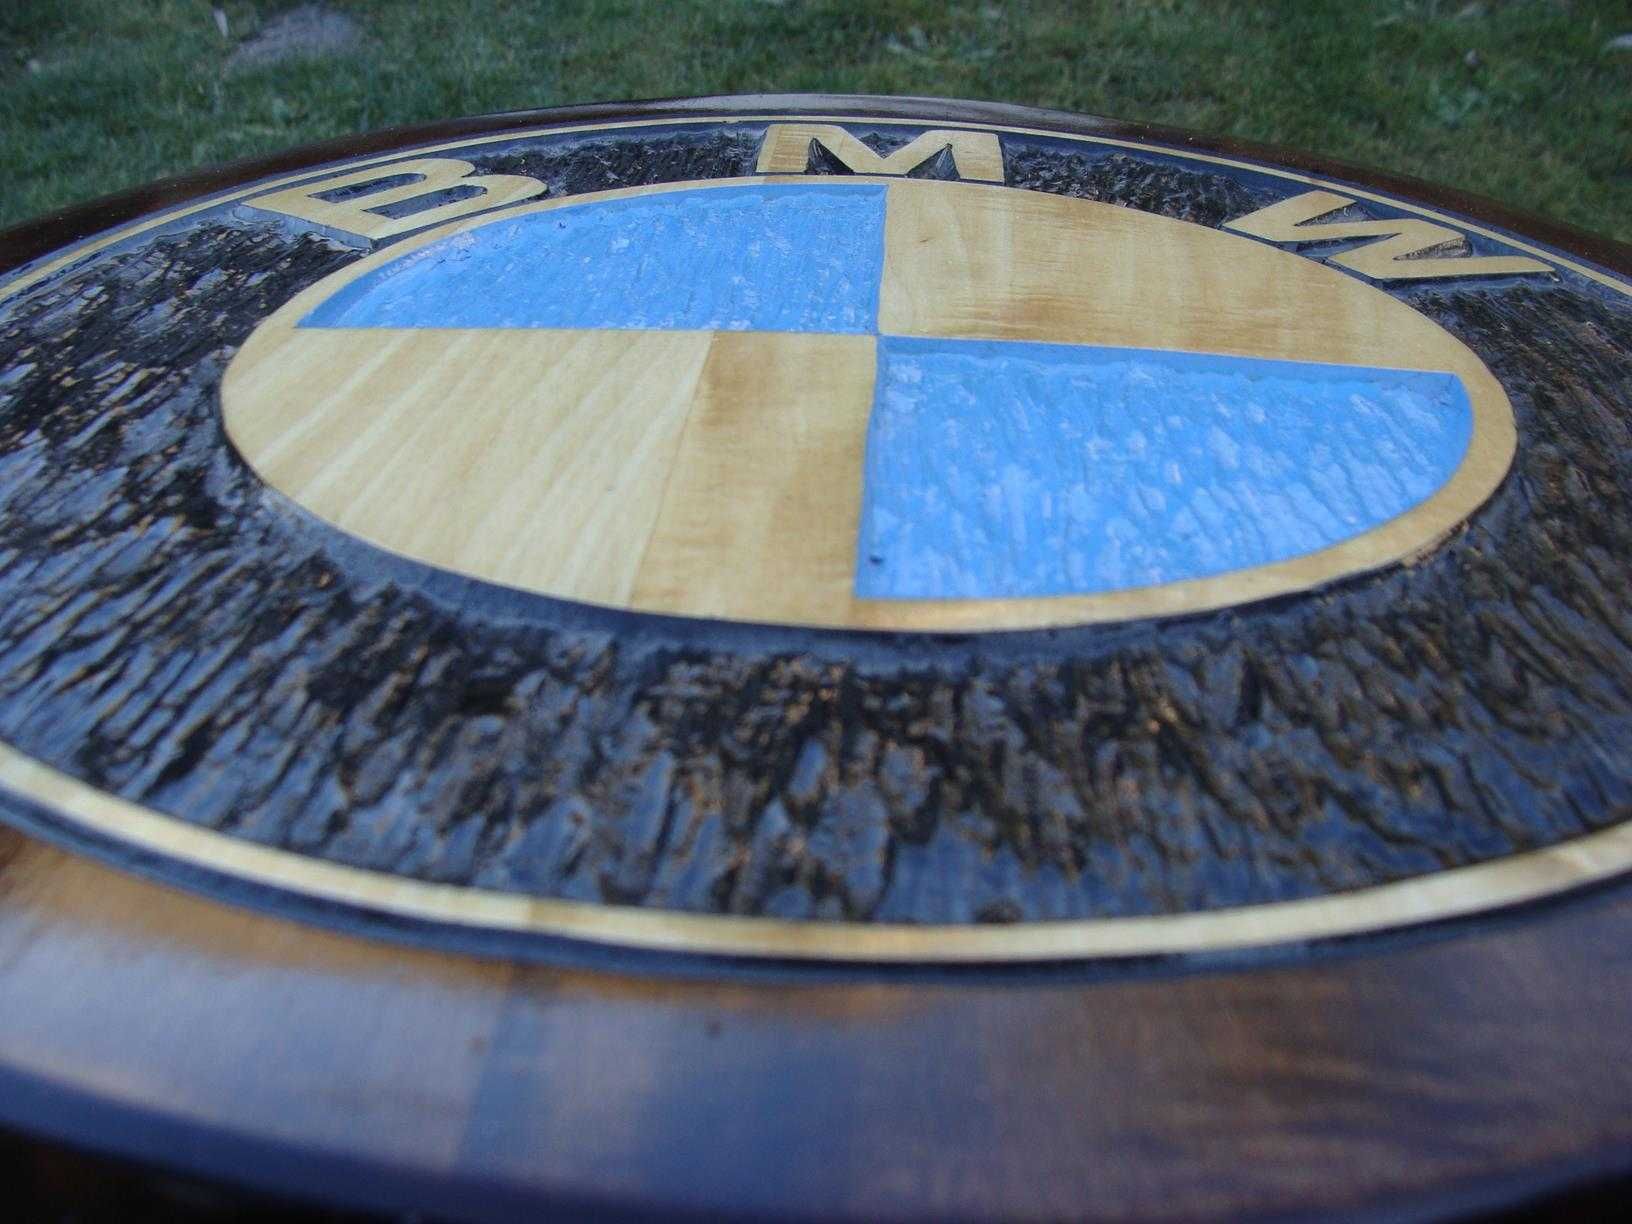 BMW Ręcznie rzeźbione logo w drewnie. UNIKAT!